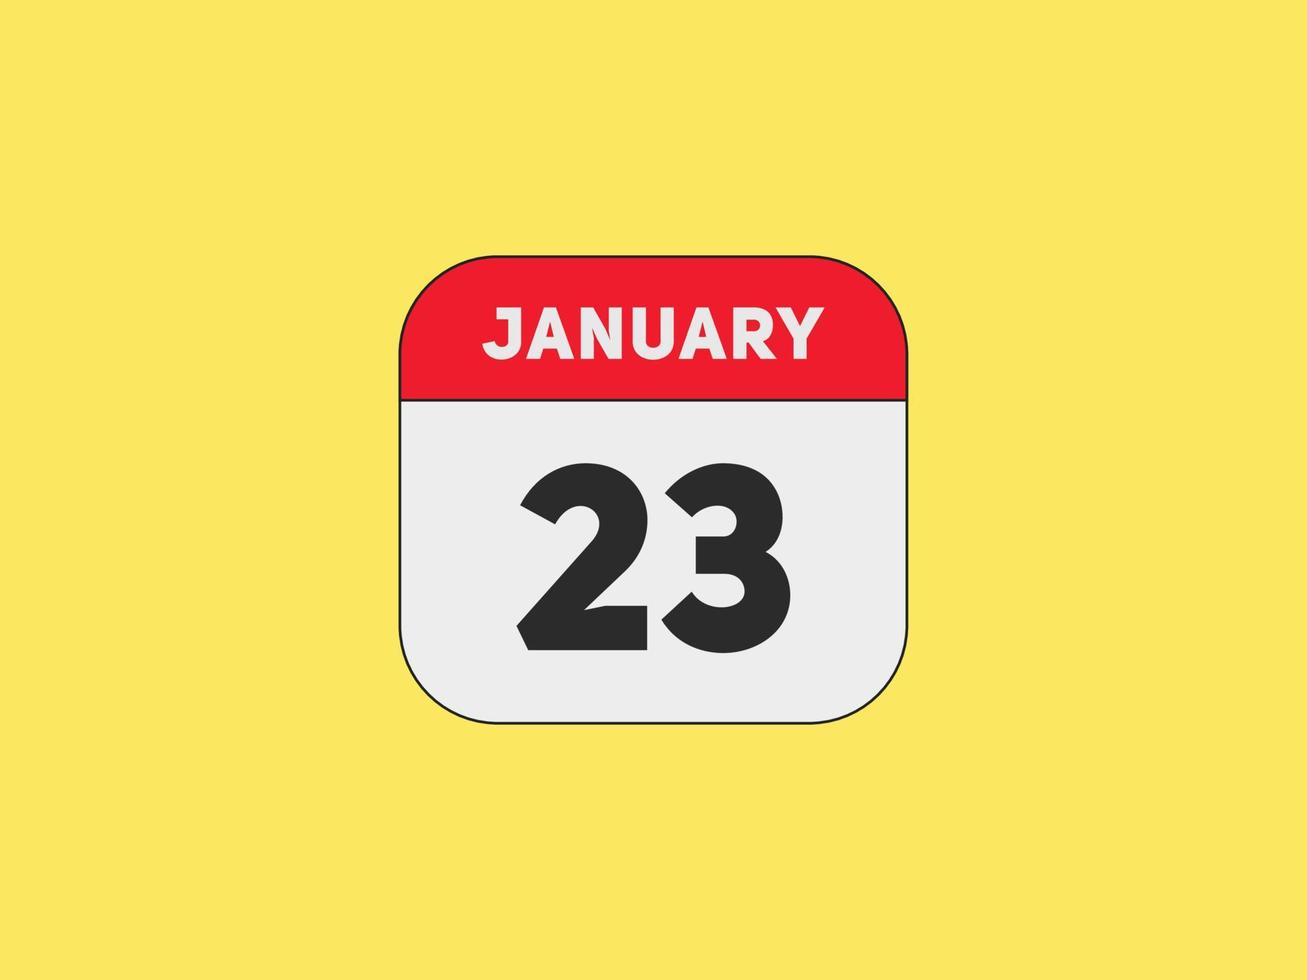 Recordatorio del calendario del 23 de enero. Plantilla de icono de calendario diario del 23 de enero. plantilla de diseño de icono de calendario 23 de enero. ilustración vectorial vector